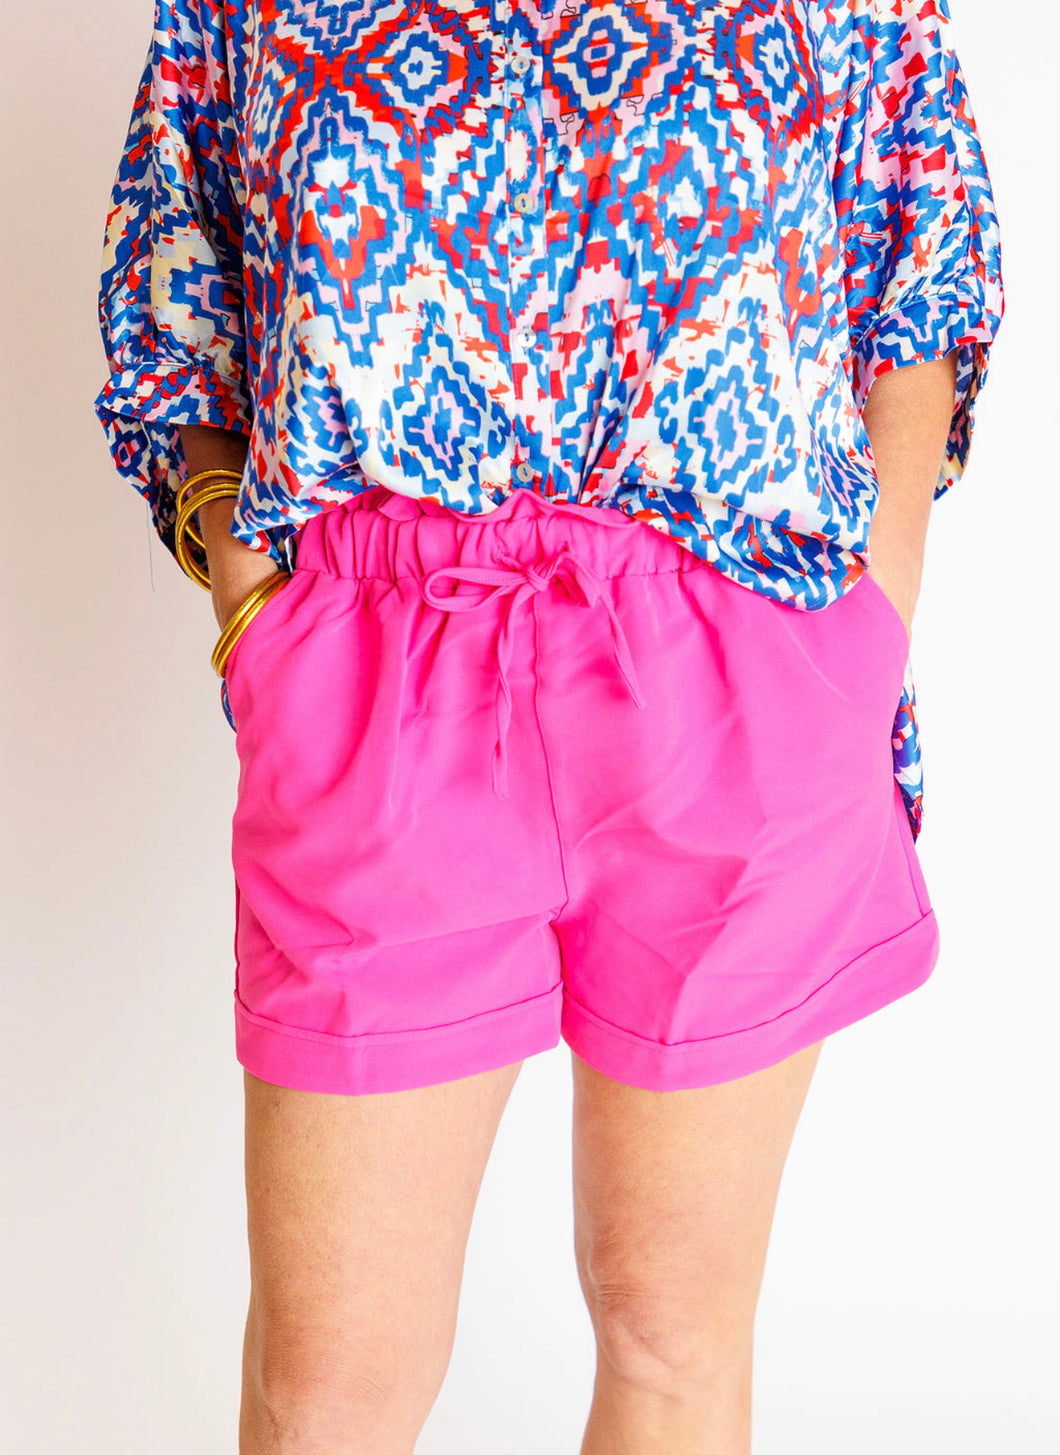 Hot Pink Drawstring Shorts